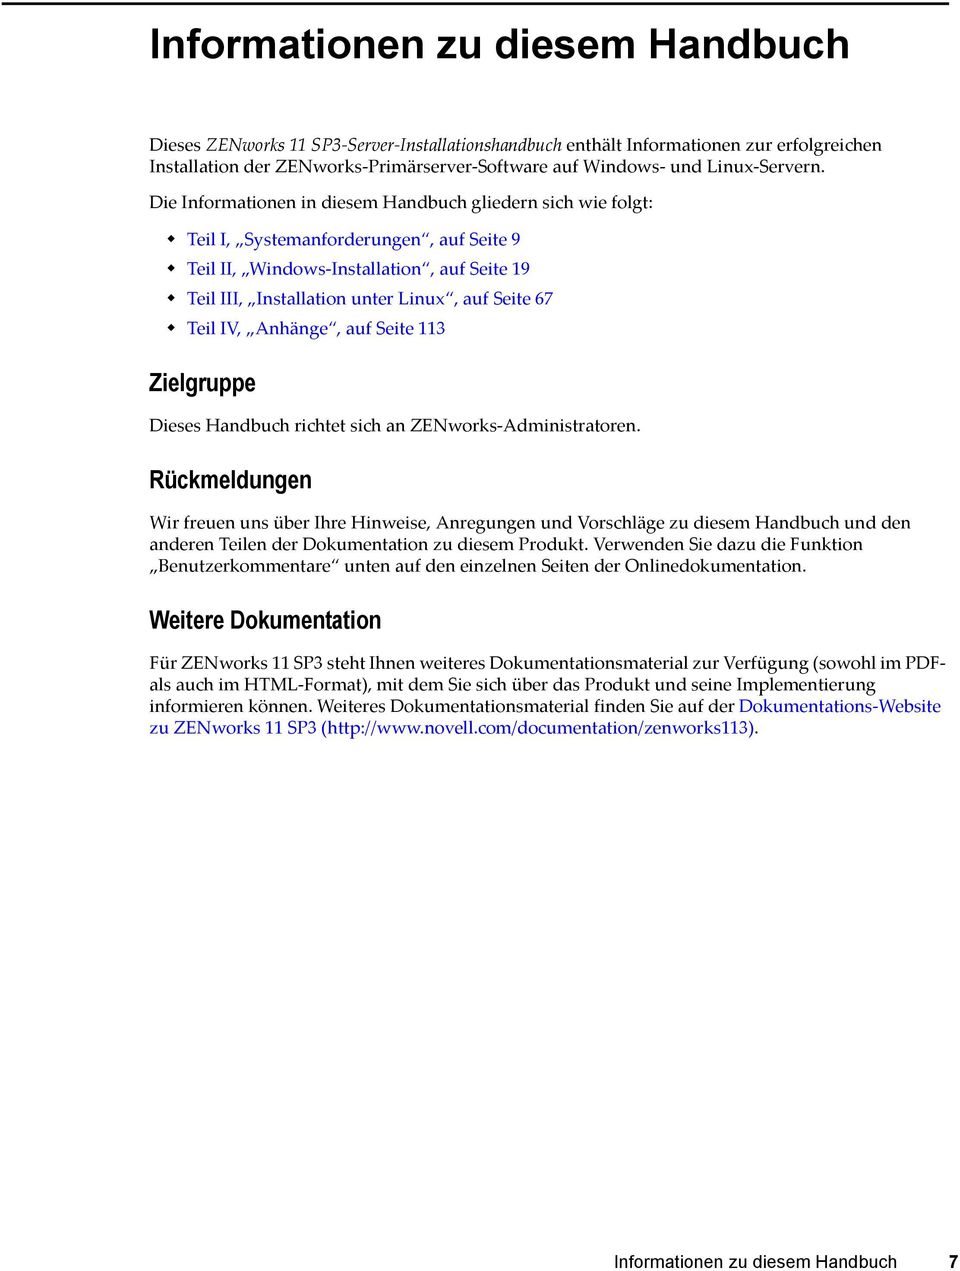 Die Informationen in diesem Handbuch gliedern sich wie folgt: Teil I, Systemanforderungen, auf Seite 9 Teil II, Windows-Installation, auf Seite 19 Teil III, Installation unter Linux, auf Seite 67